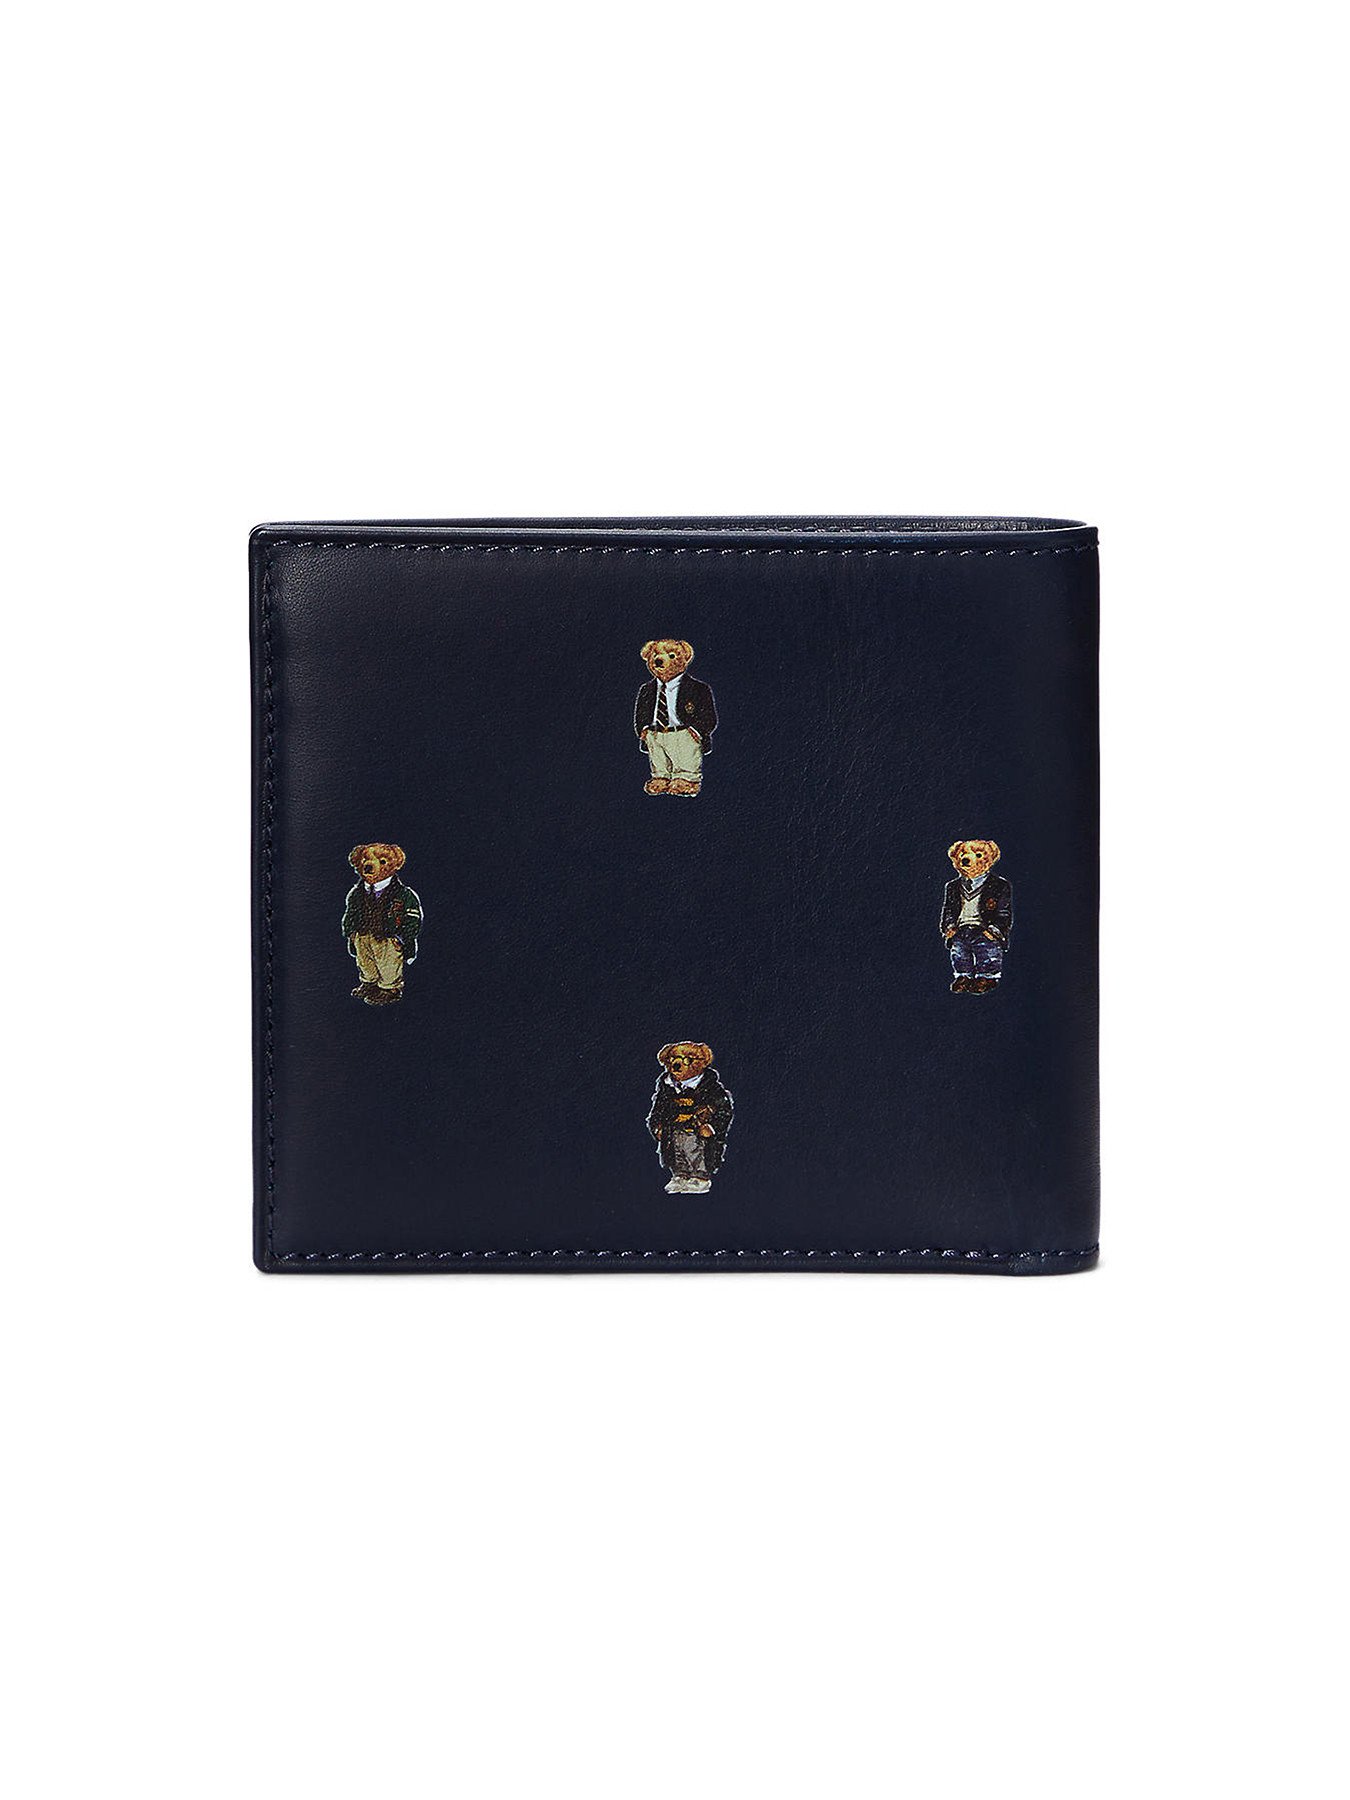 Men's Polo Ralph Lauren Polo Bear Leather Billfold Wallet | Wallets |  Fenwick